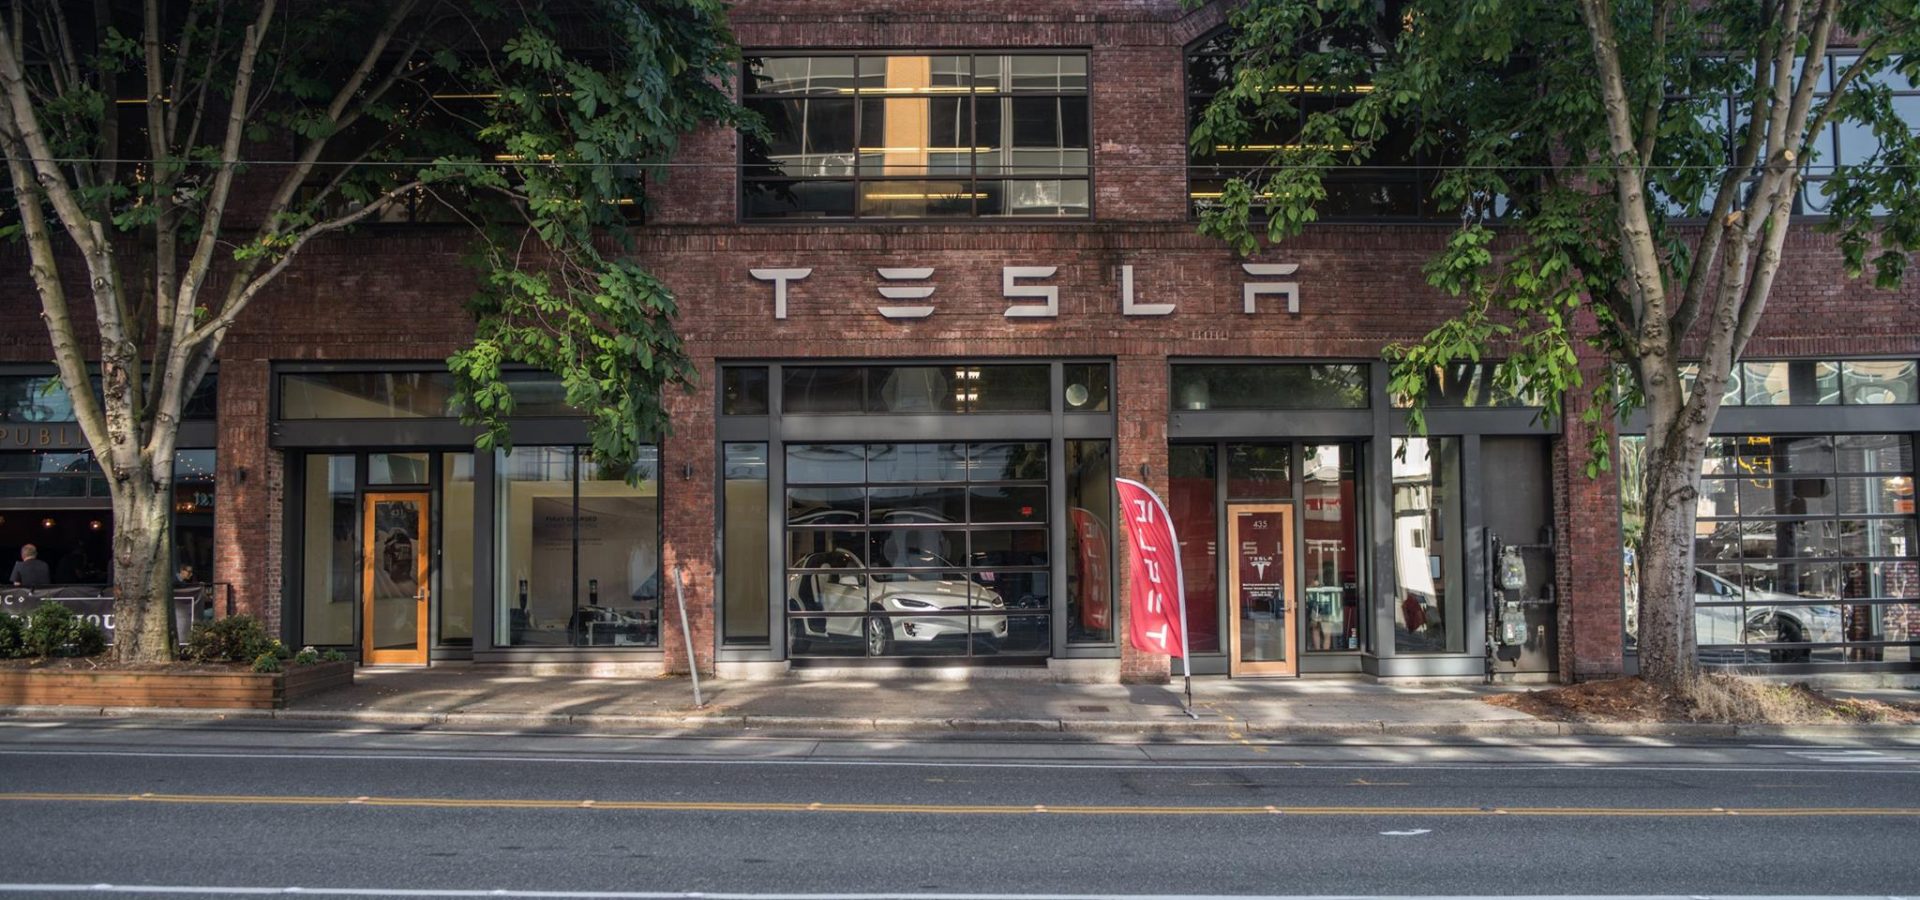 Image of Tesla showroom exterior